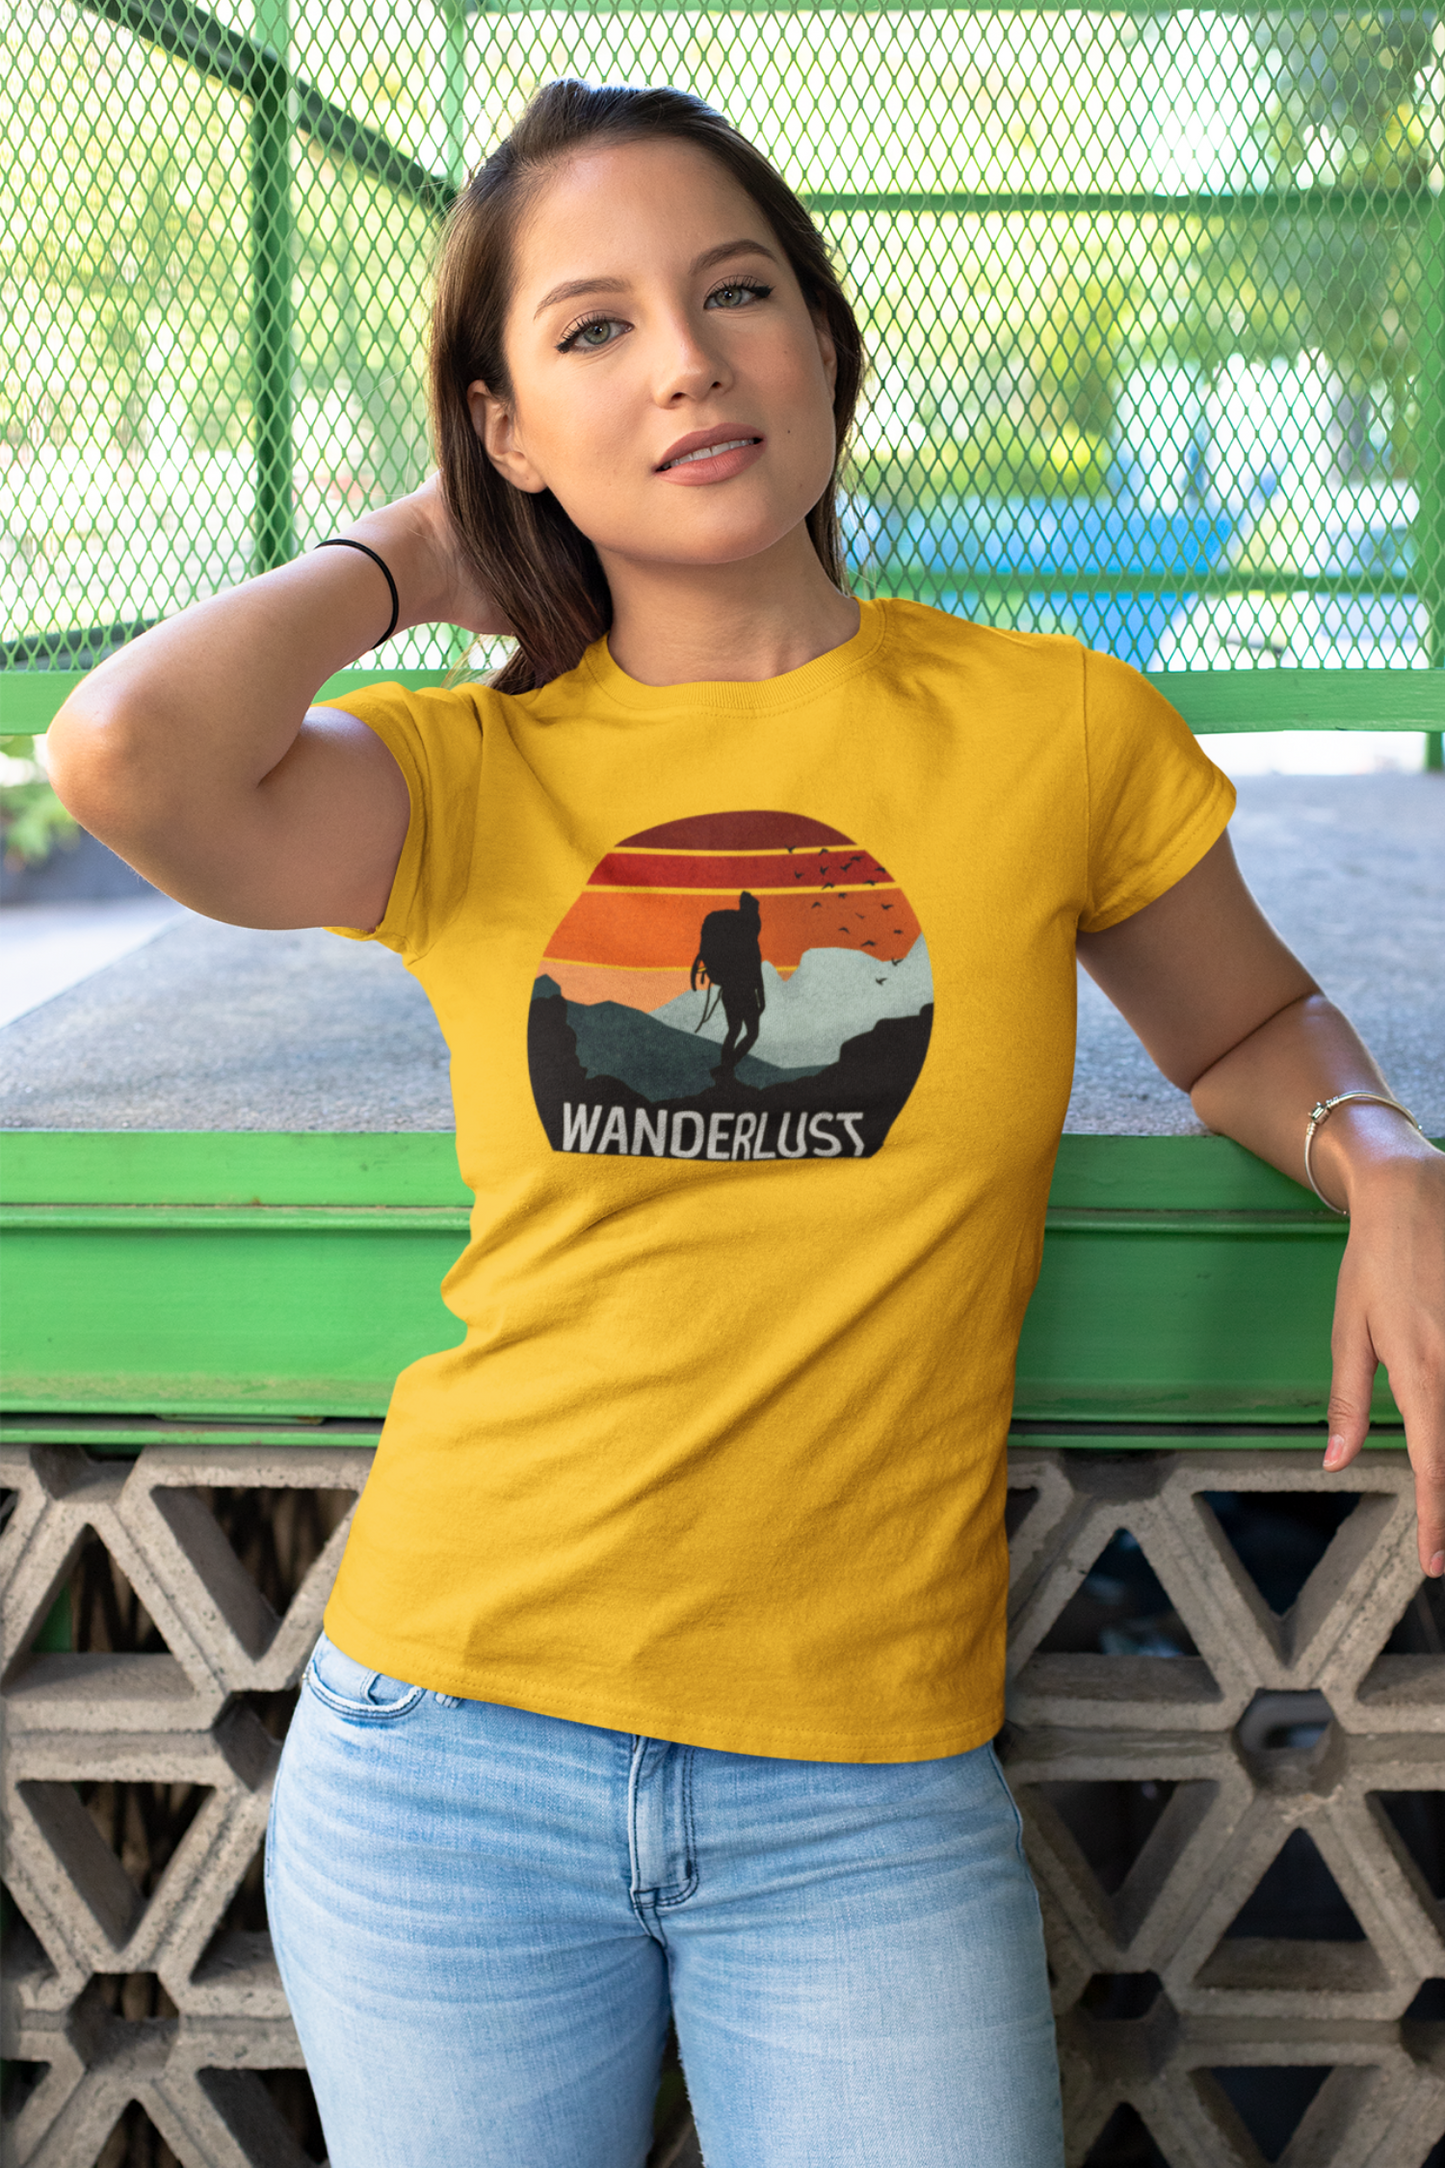 Wanderlust Women's Travel T-Shirt - nautunkee.com